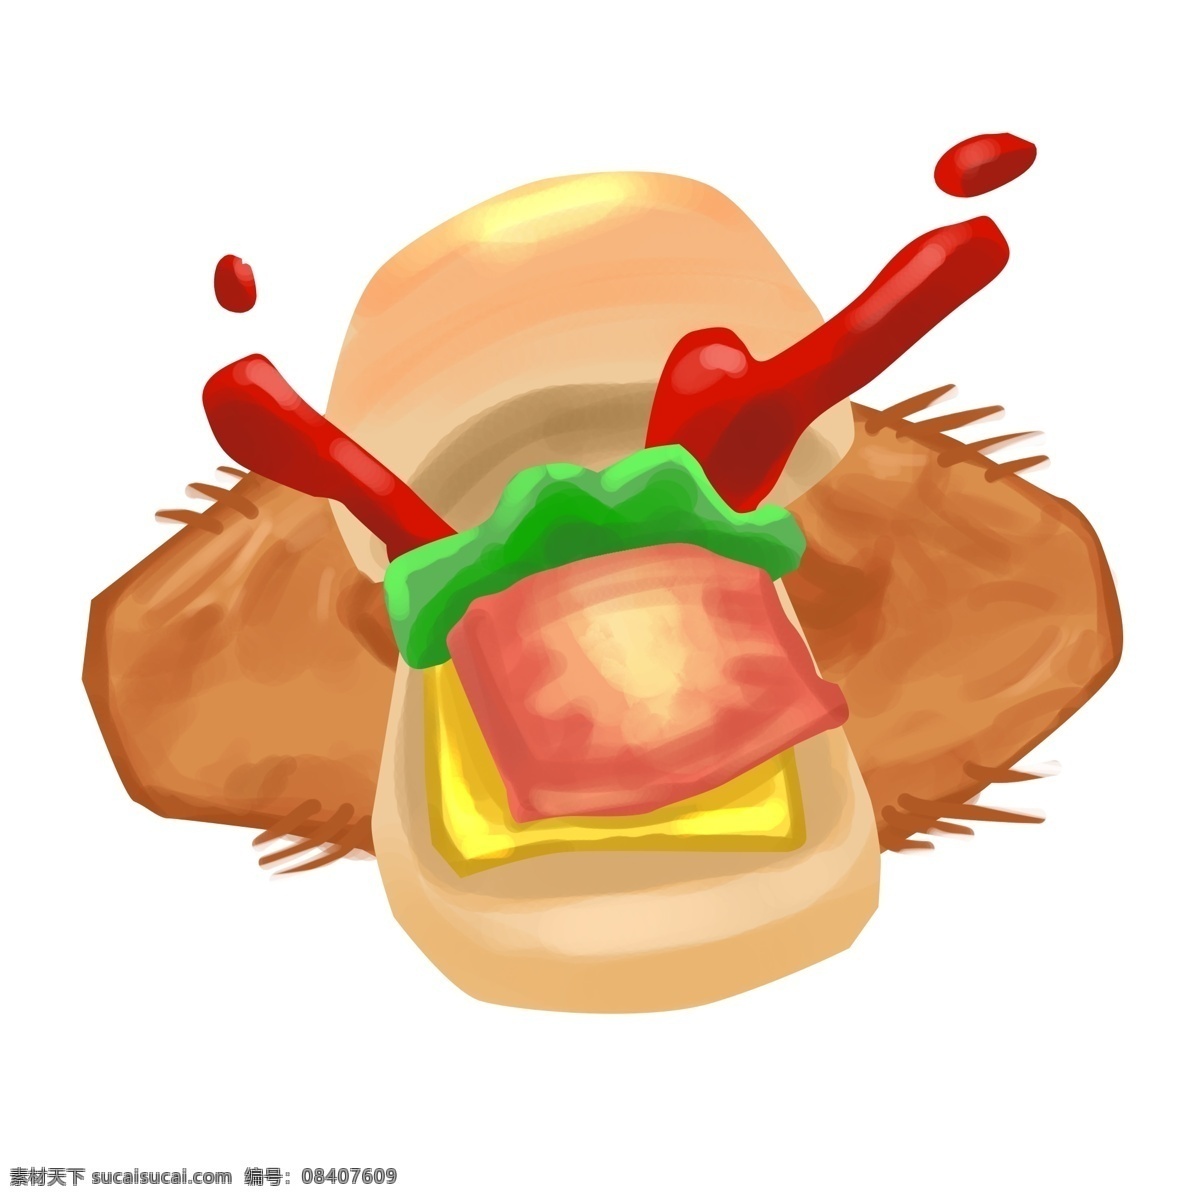 锁 喉 手势 卡通 插画 汉堡插画 食物 快餐 卡通食物插画 红色的番茄酱 美味的汉堡 食物插画 汉堡包